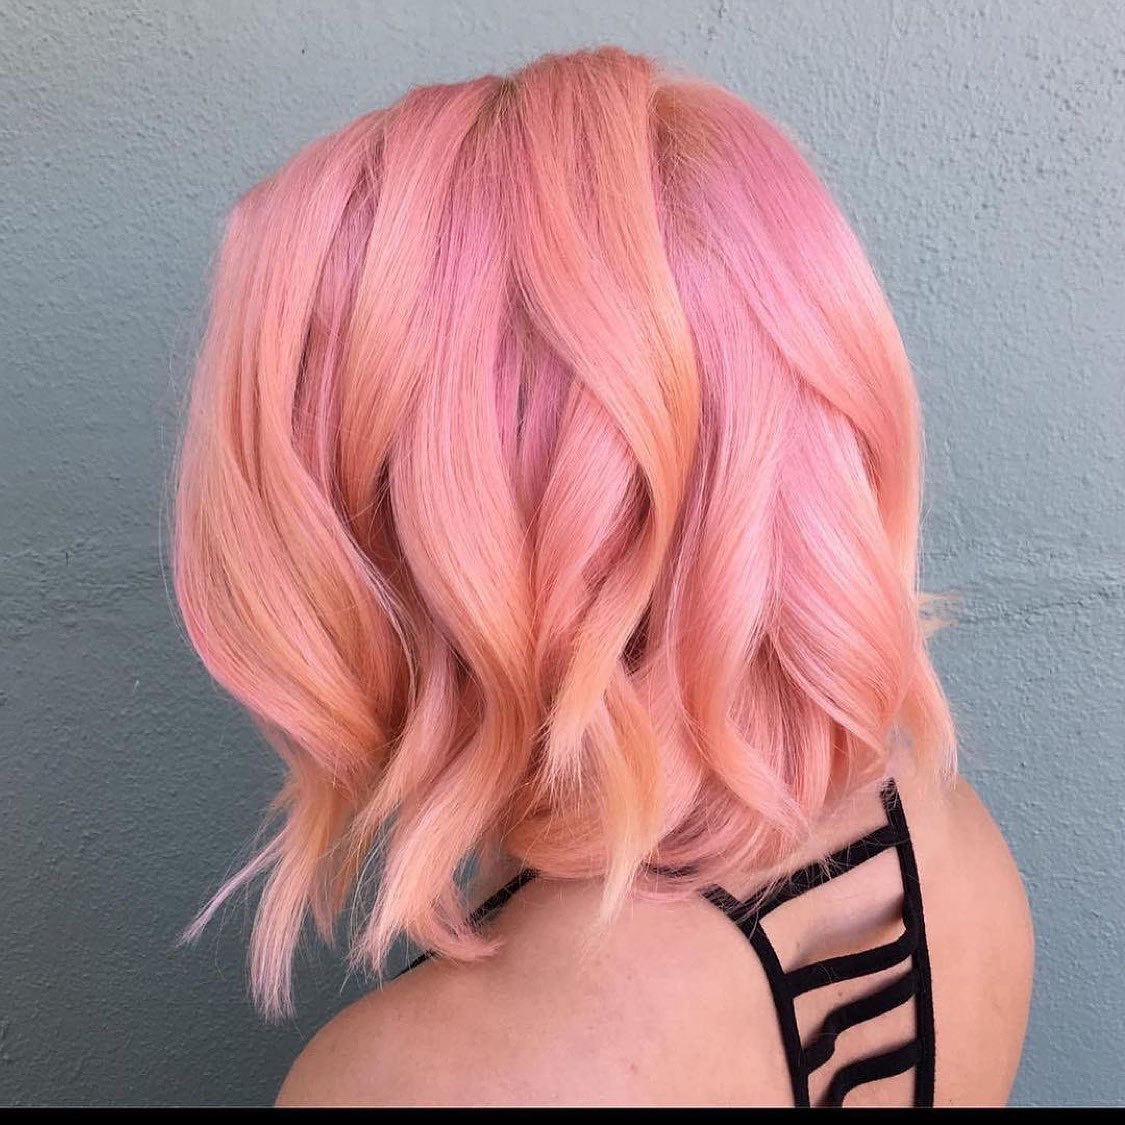 Les cheveux roses sont un excellent moyen d'égayer votre look (+35 photos)